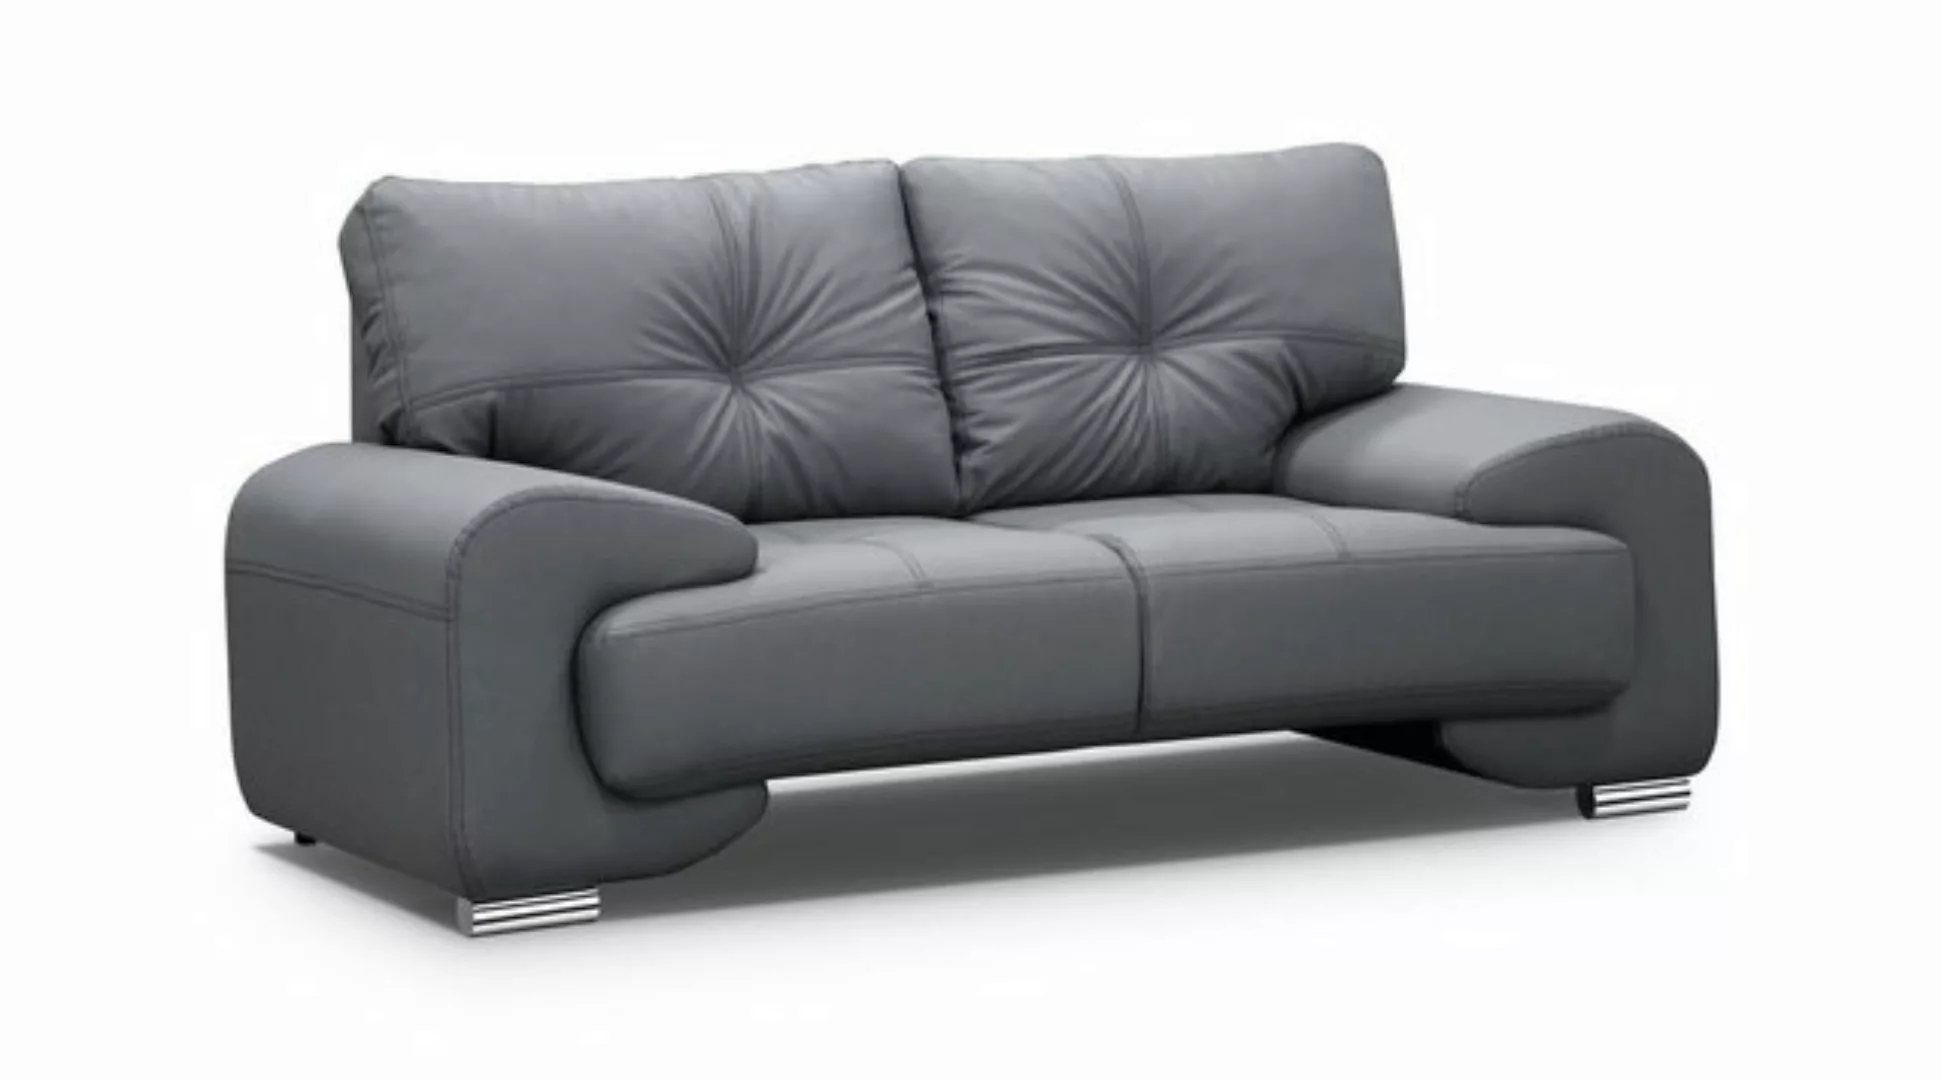 Beautysofa 2-Sitzer Zweisitzer Sofa Couch OMEGA Neu, Die Lieferung beinhalt günstig online kaufen